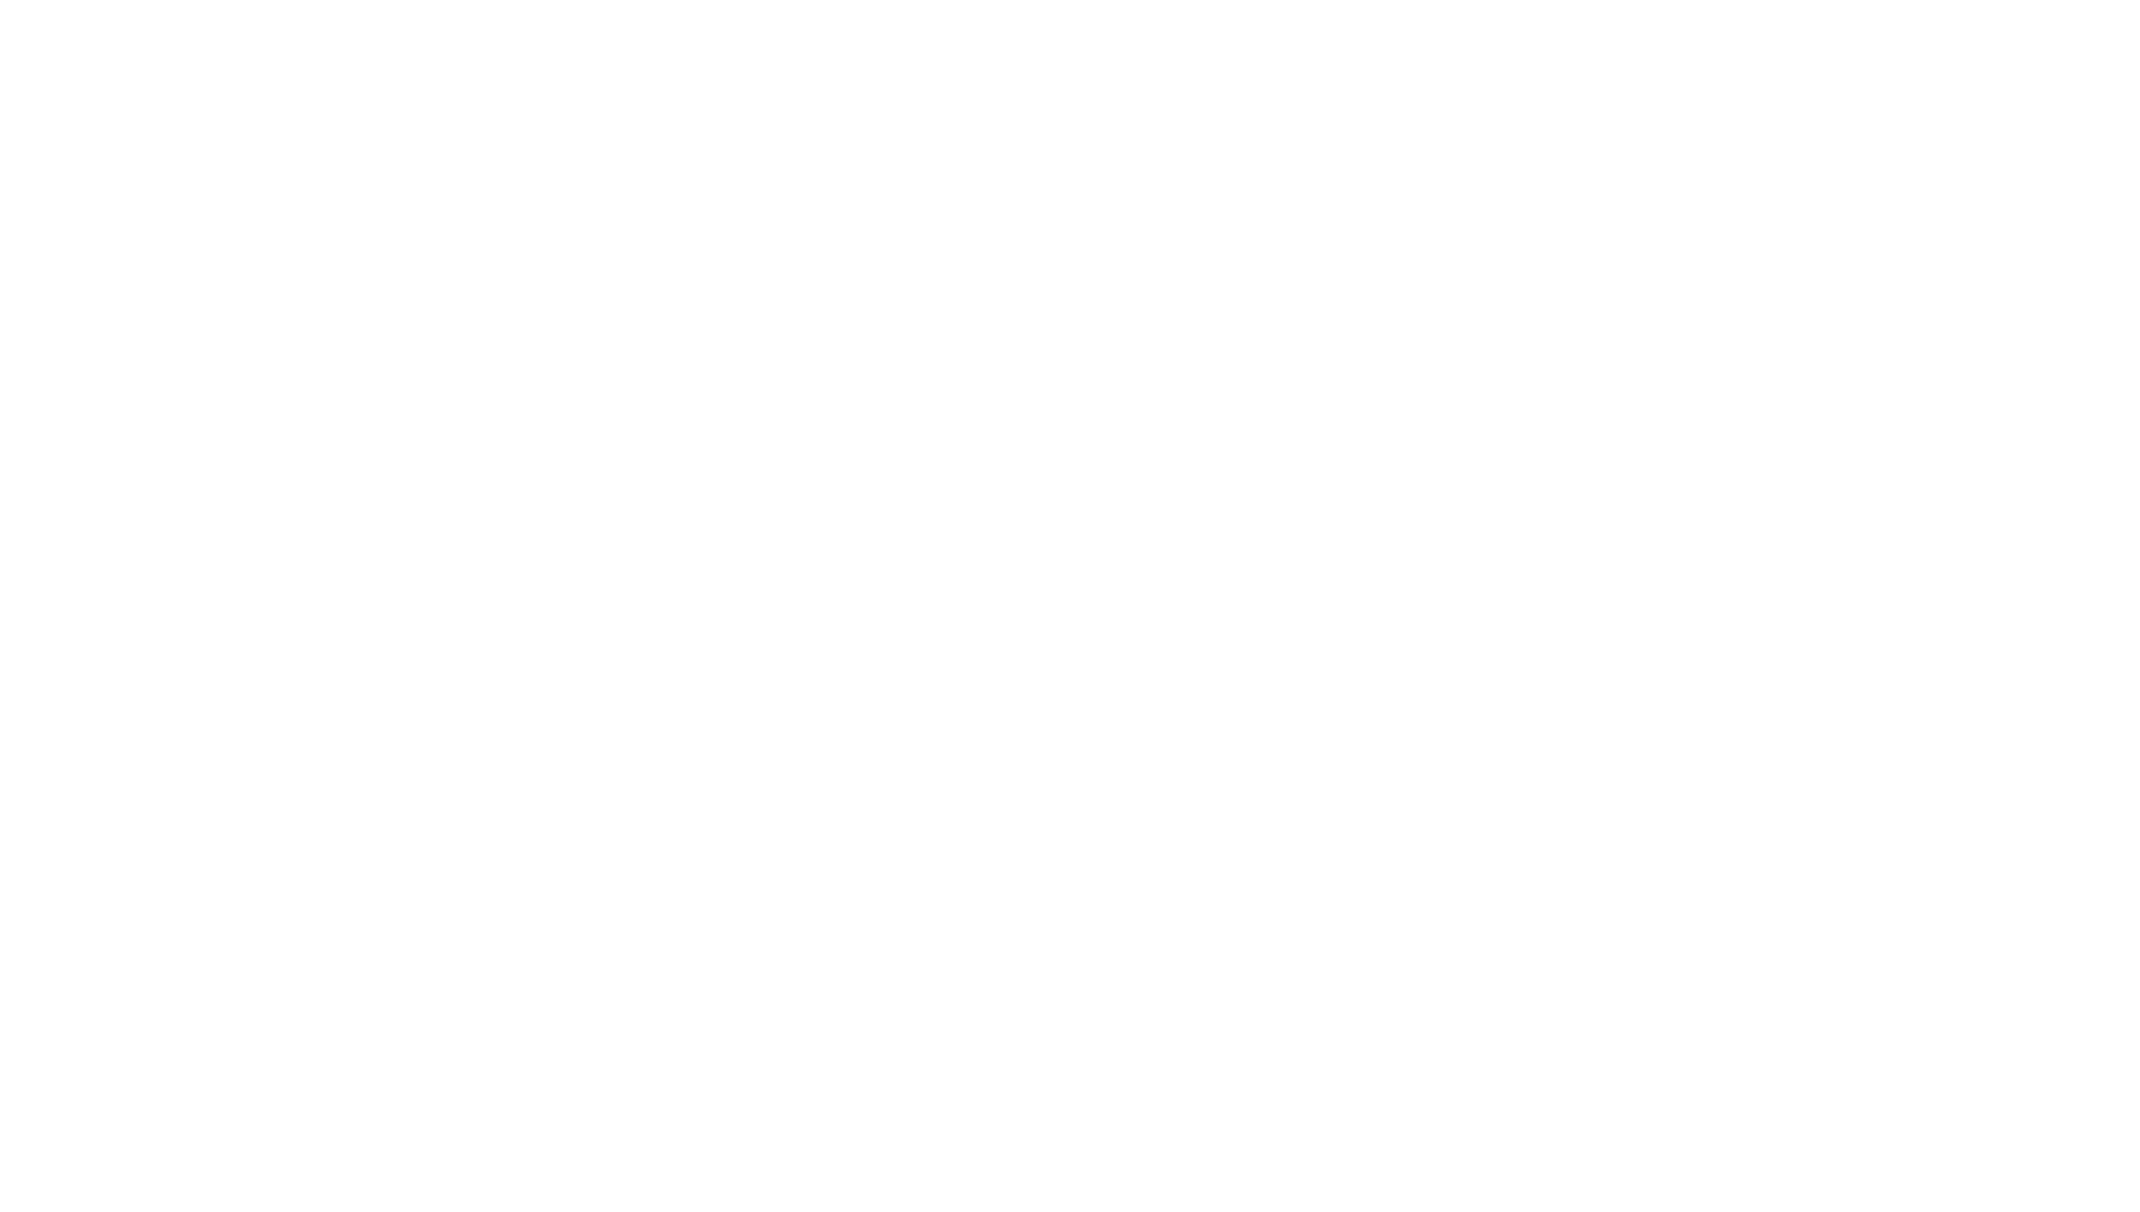 Gulfood logo